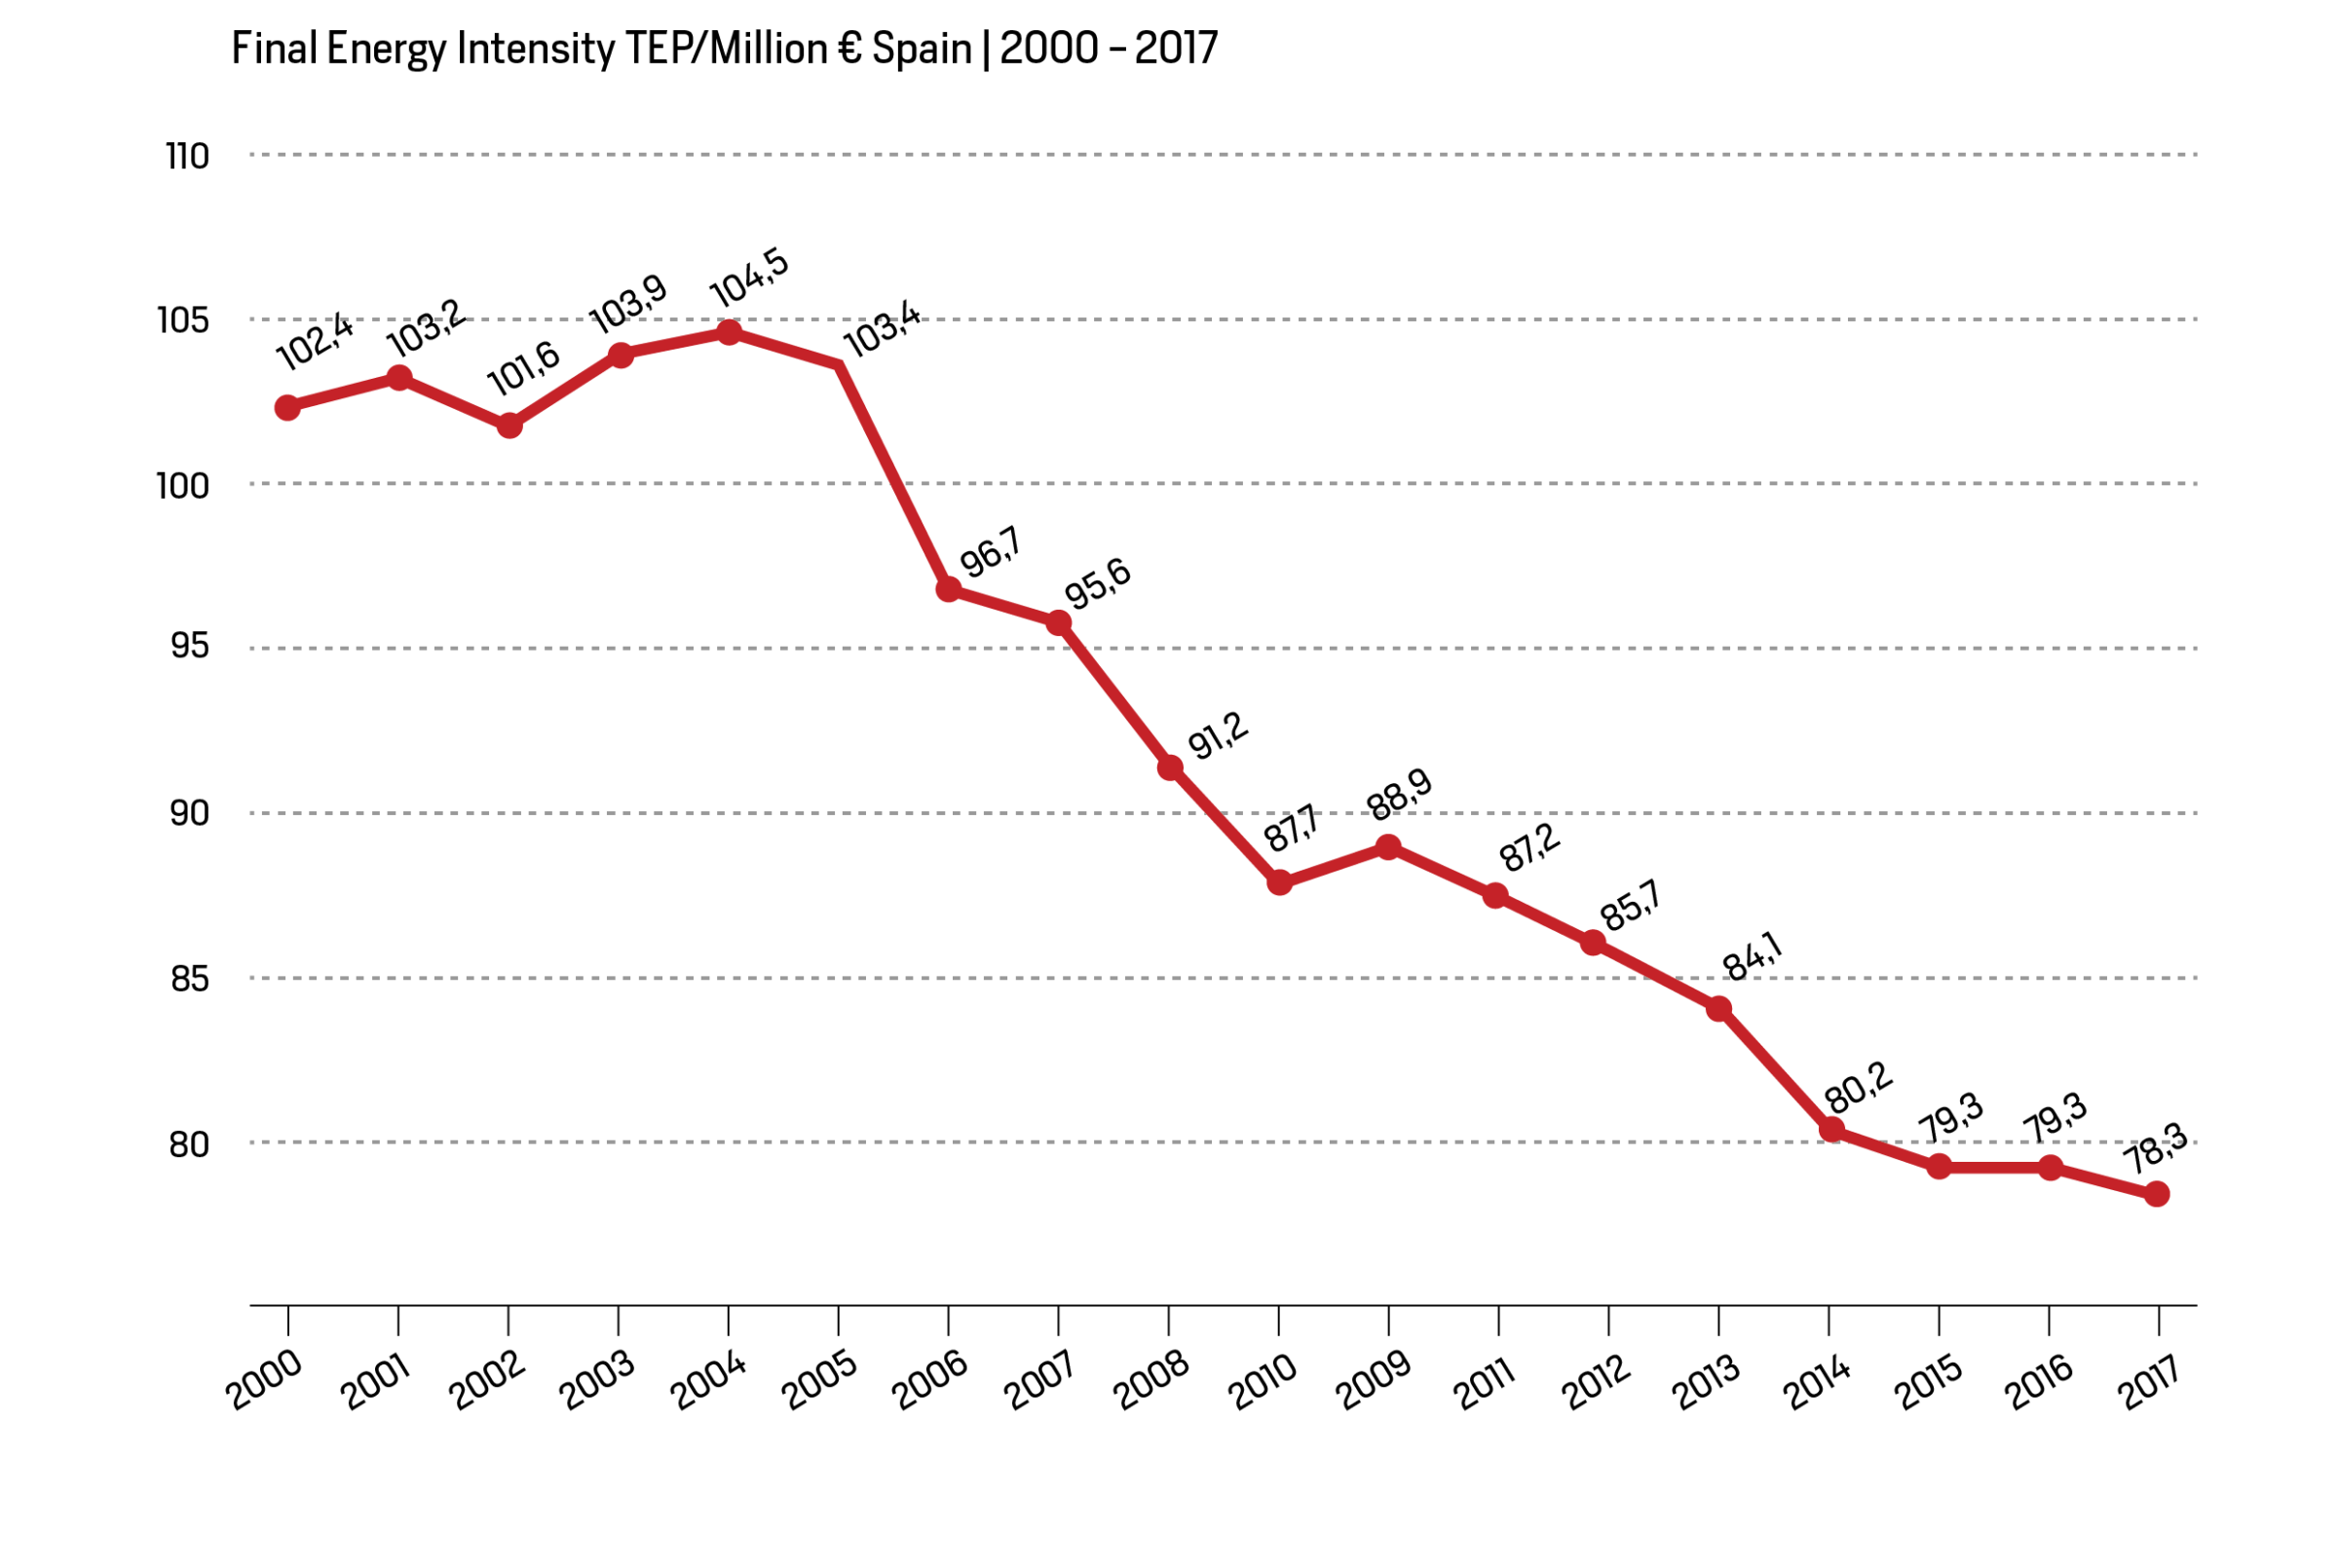 Energetic Intensity of Spain in the period 2000-2017